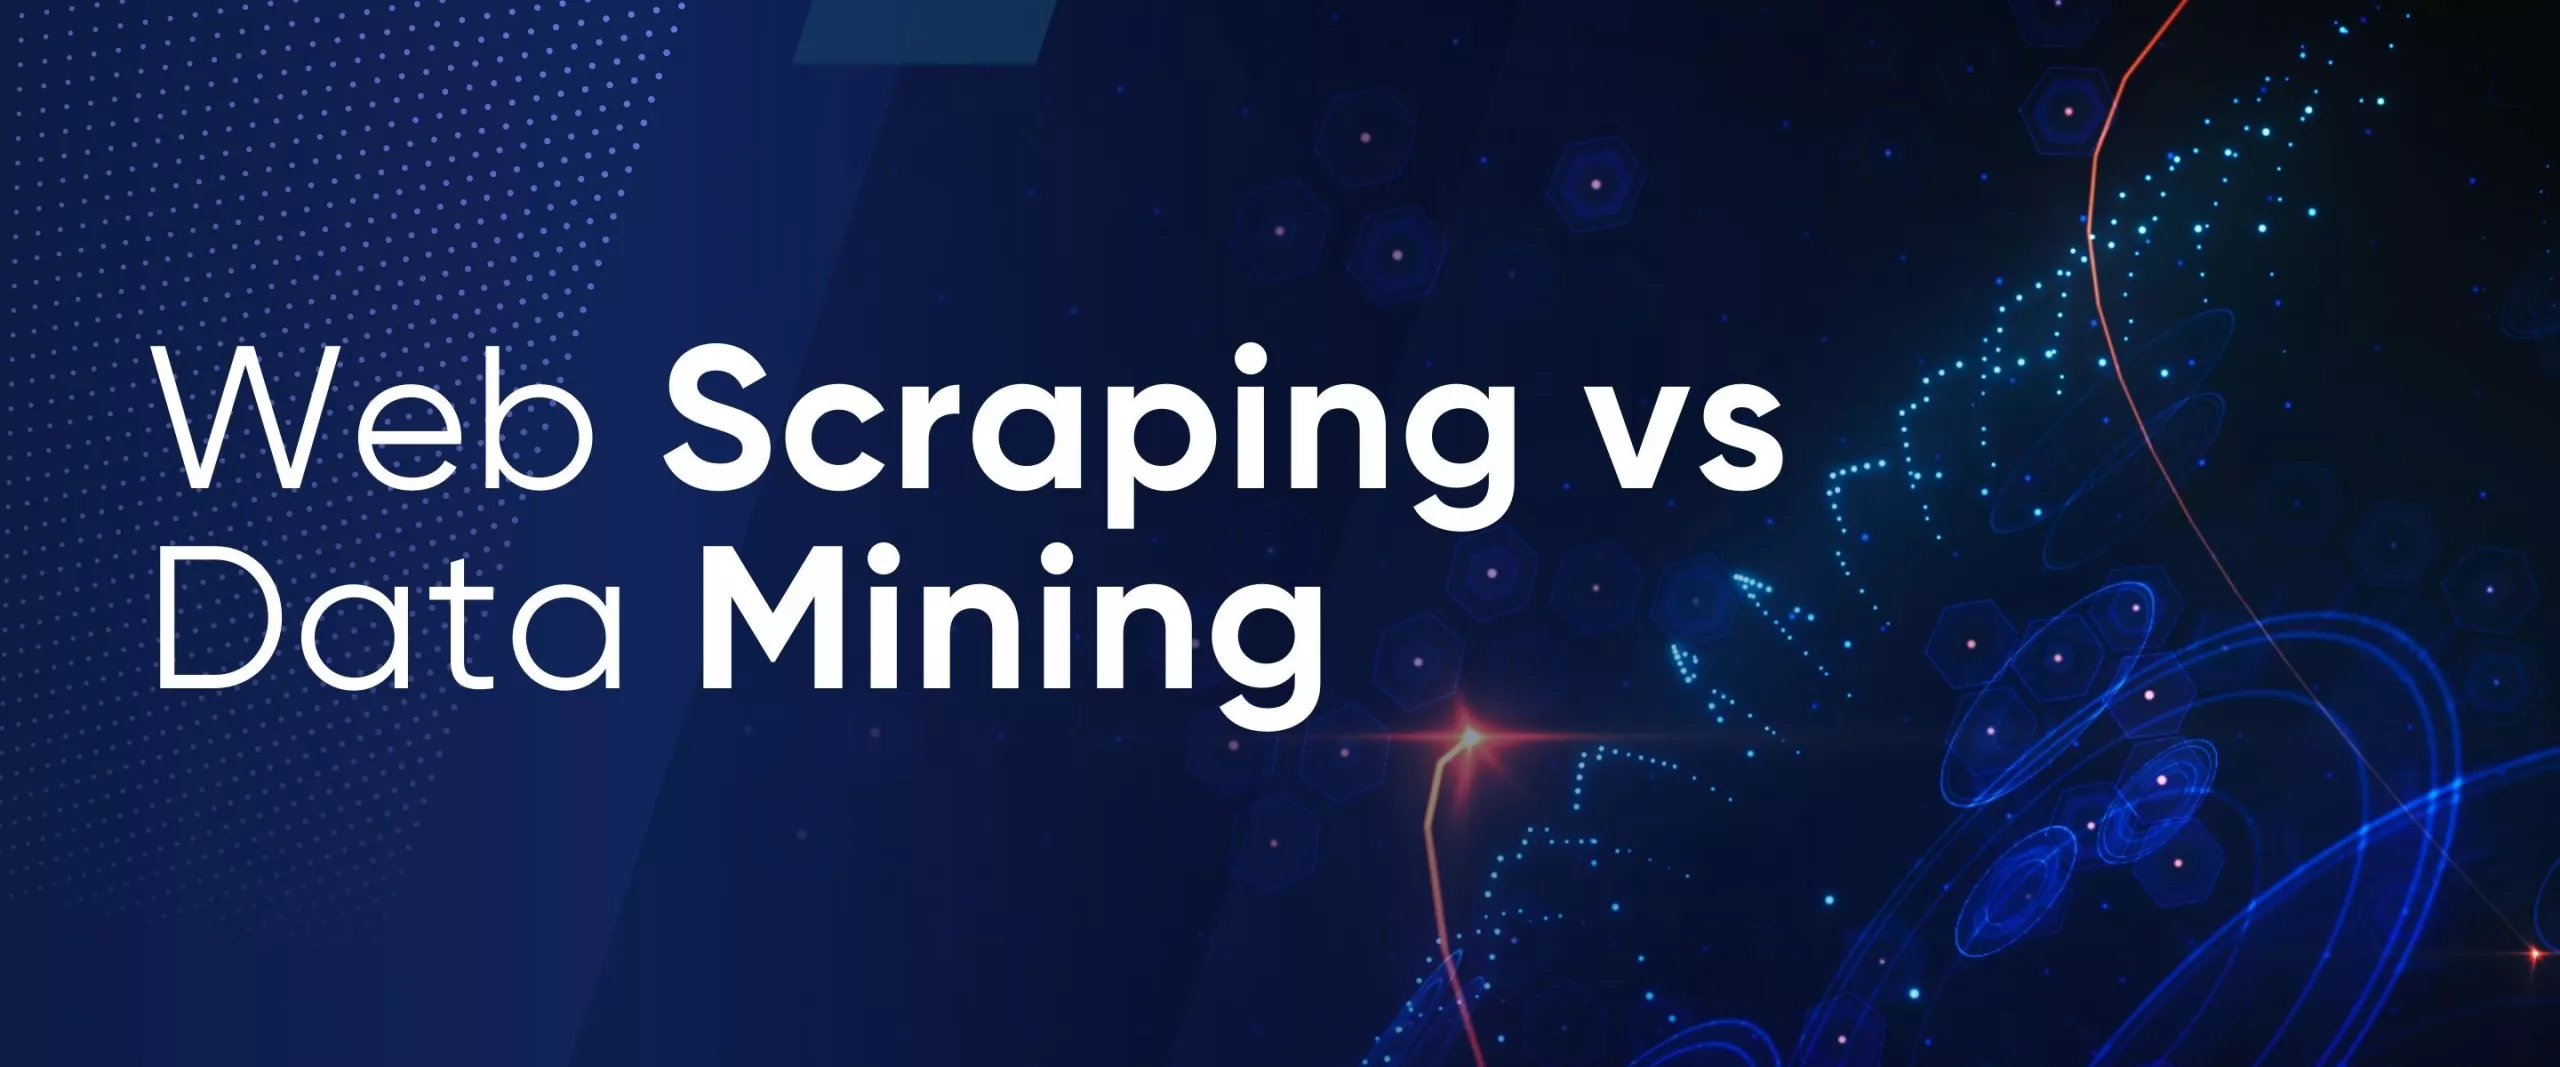 Web scraping vs Data mining